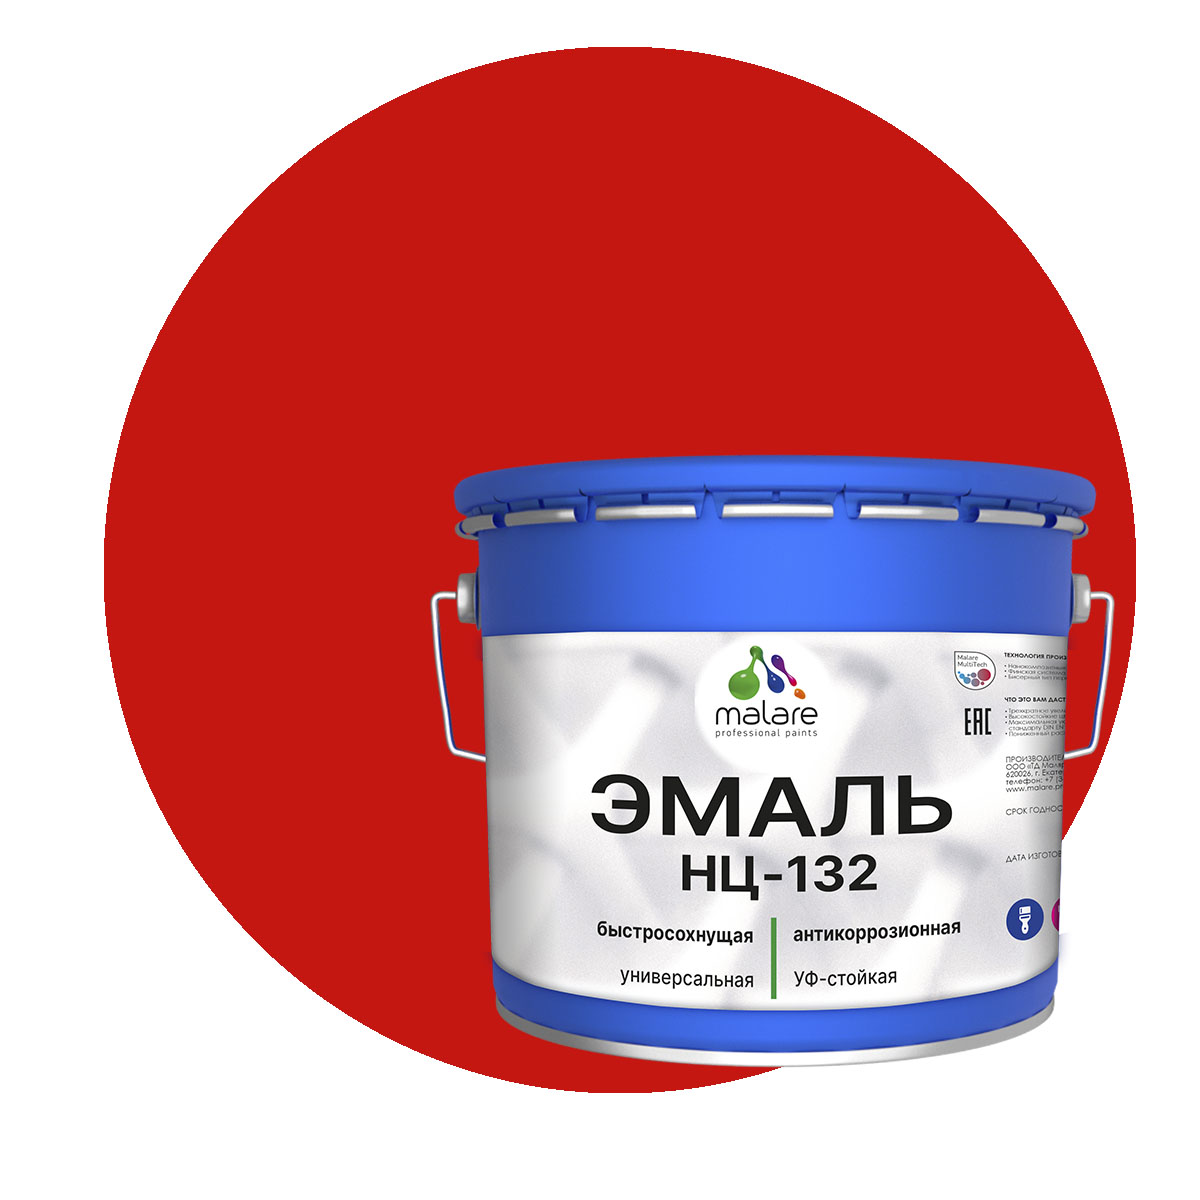 Эмаль Malare НЦ-132 универсальная, RAL 3020, красный, матовая, 12,5 кг.